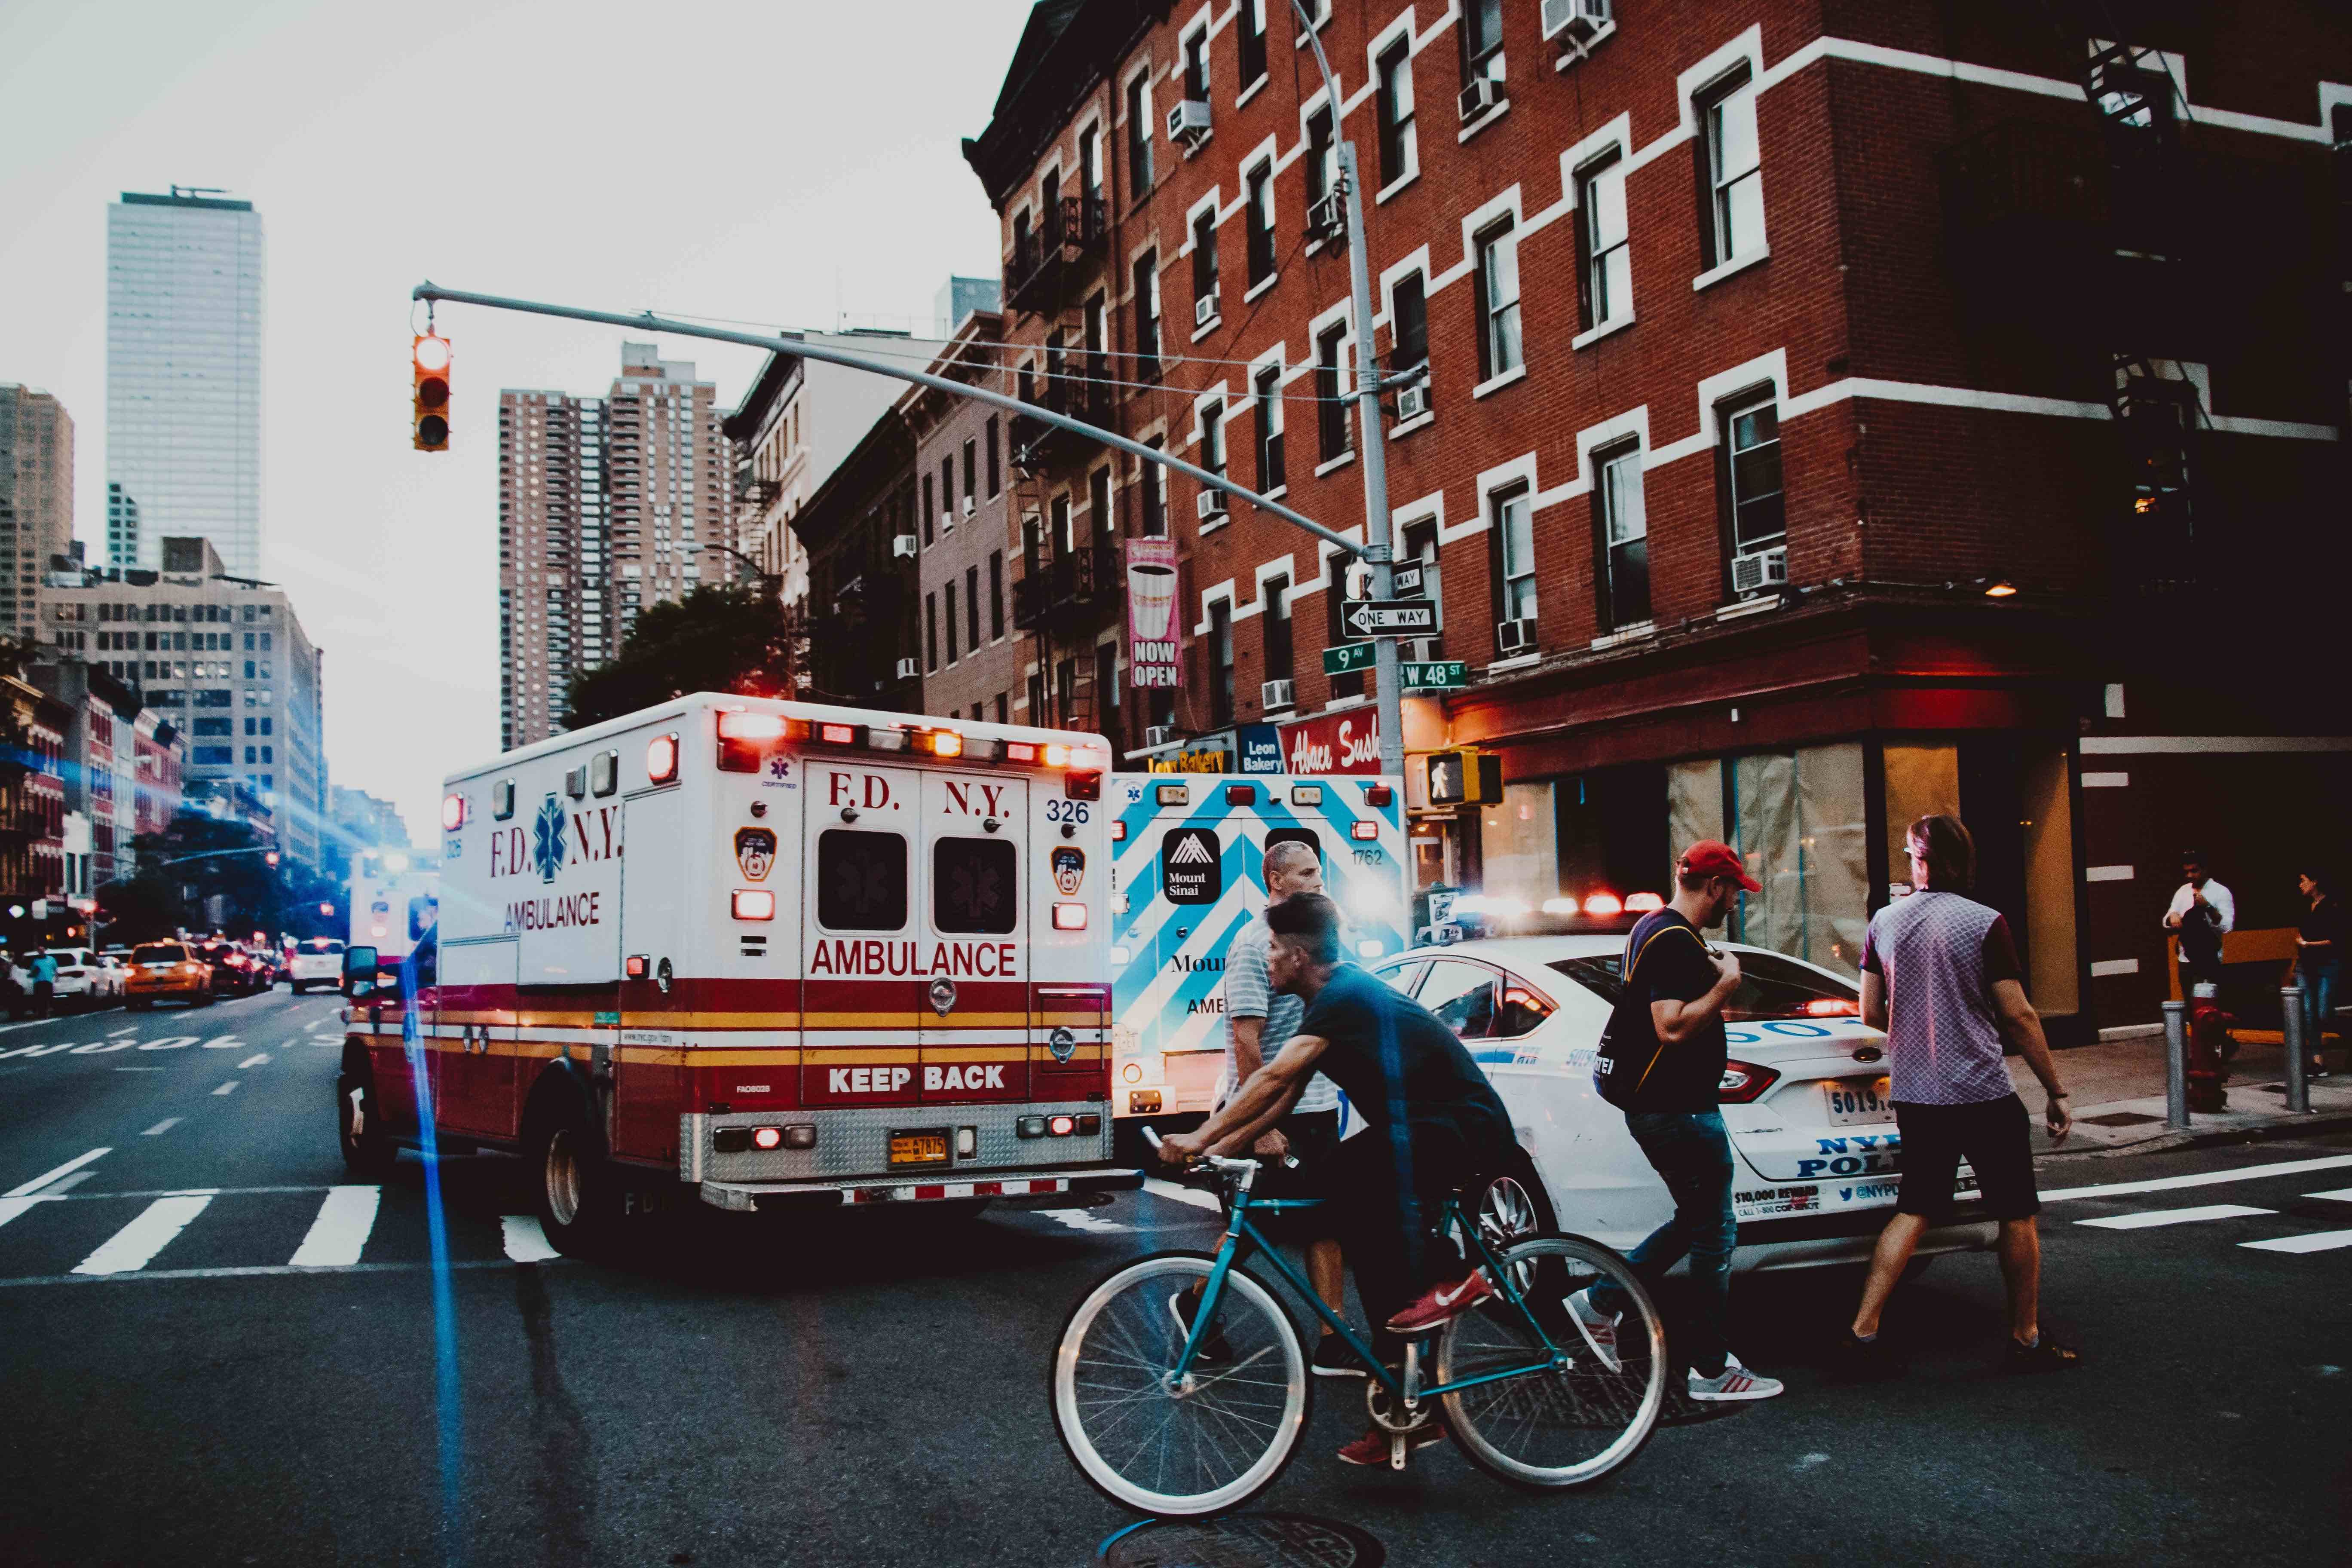 Photo of an ambulance